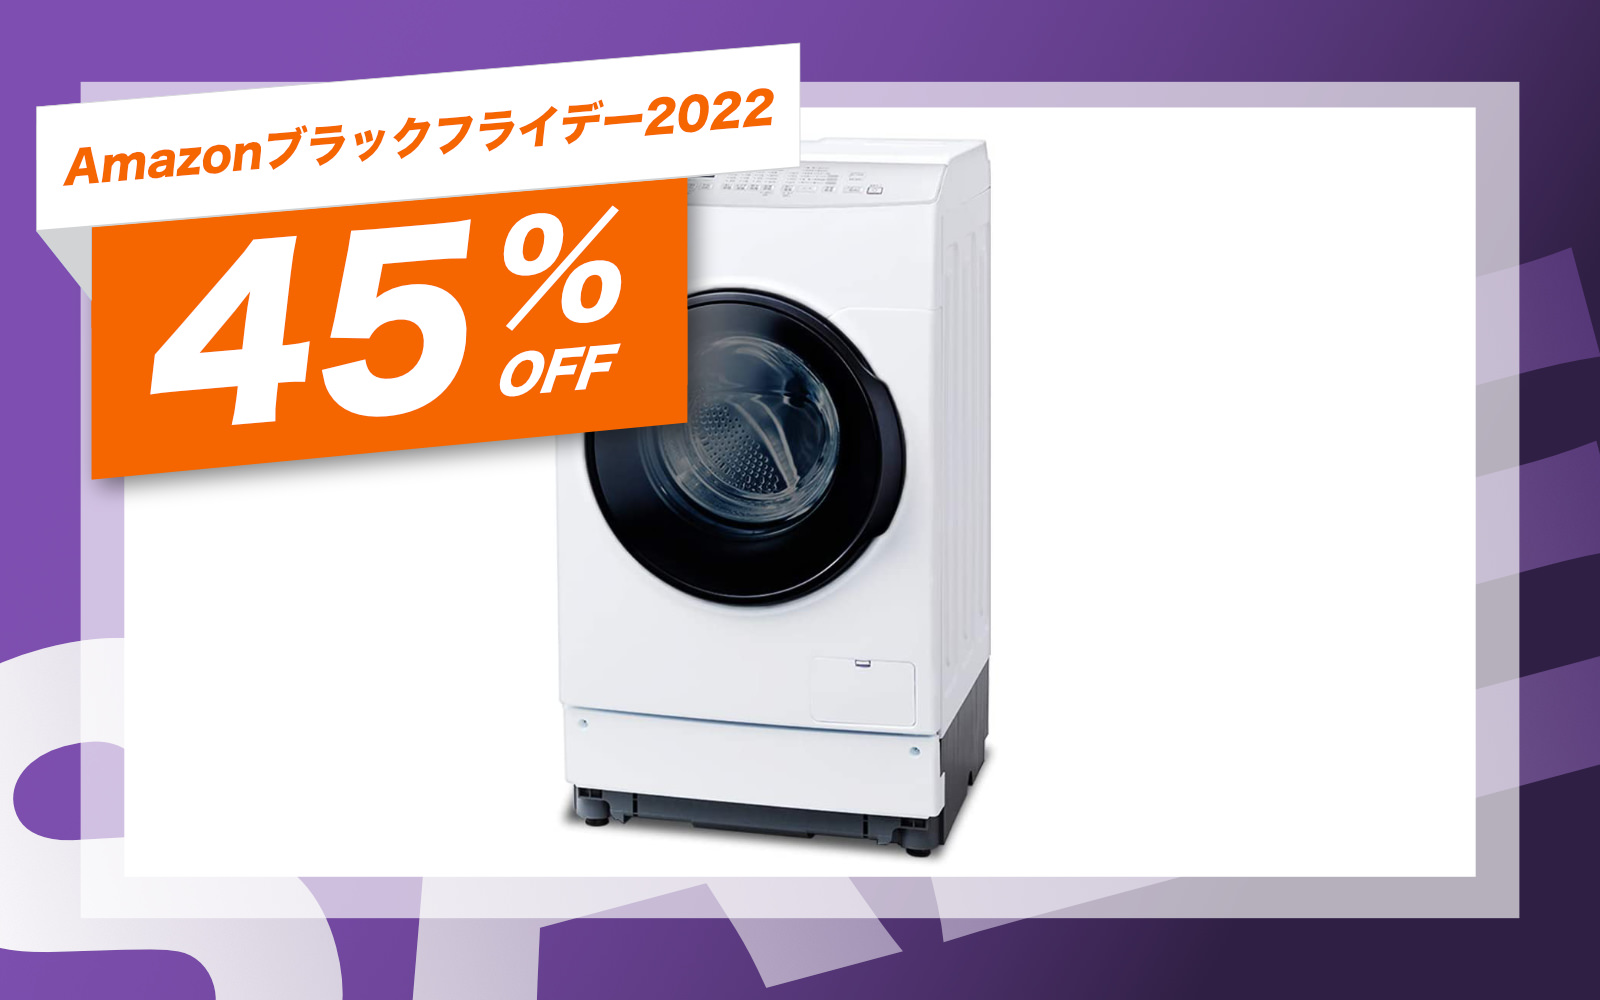 ドラム式洗濯乾燥機が8万円で買えるなんて夢みたいでしょ？夢じゃない 